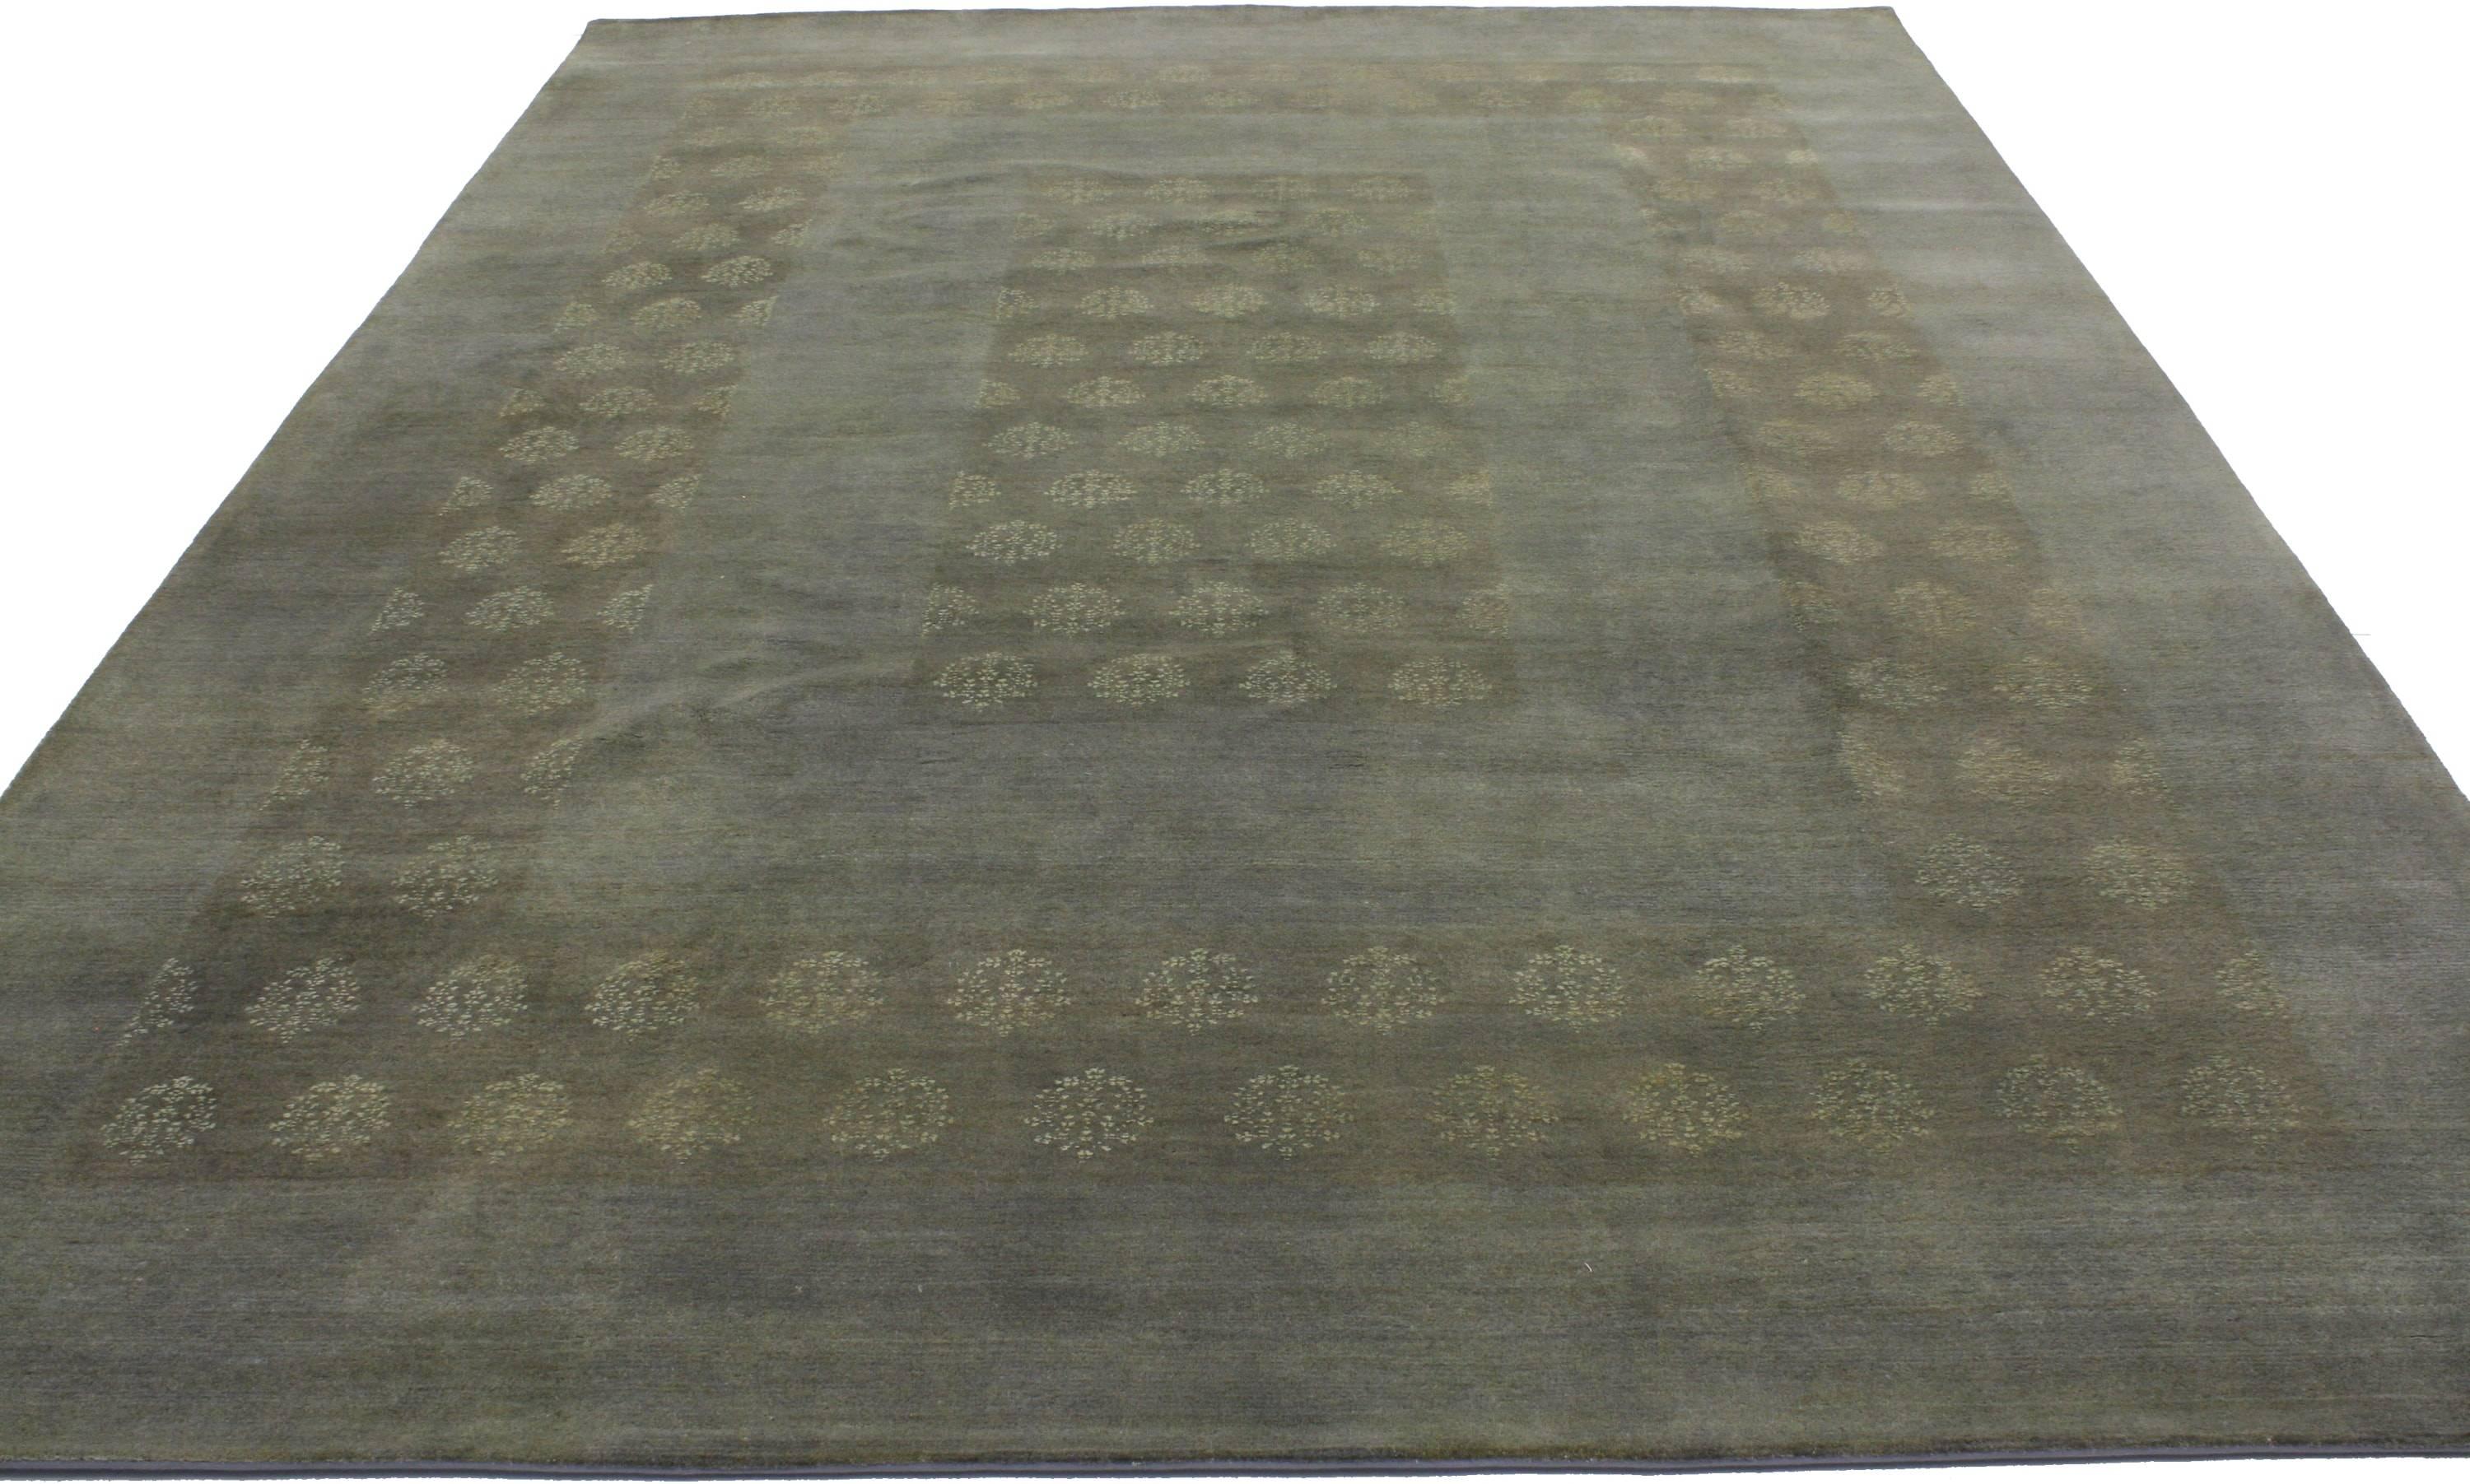 30217, neuer indischer Teppich mit modernem Übergangsstil. Zarte Blumenbouquets, die an die liebevoll arrangierten Muster eines Kaschmirschals erinnern, bedecken das quadratische Muster dieses indischen Teppichs im Übergangsstil. Die schicken